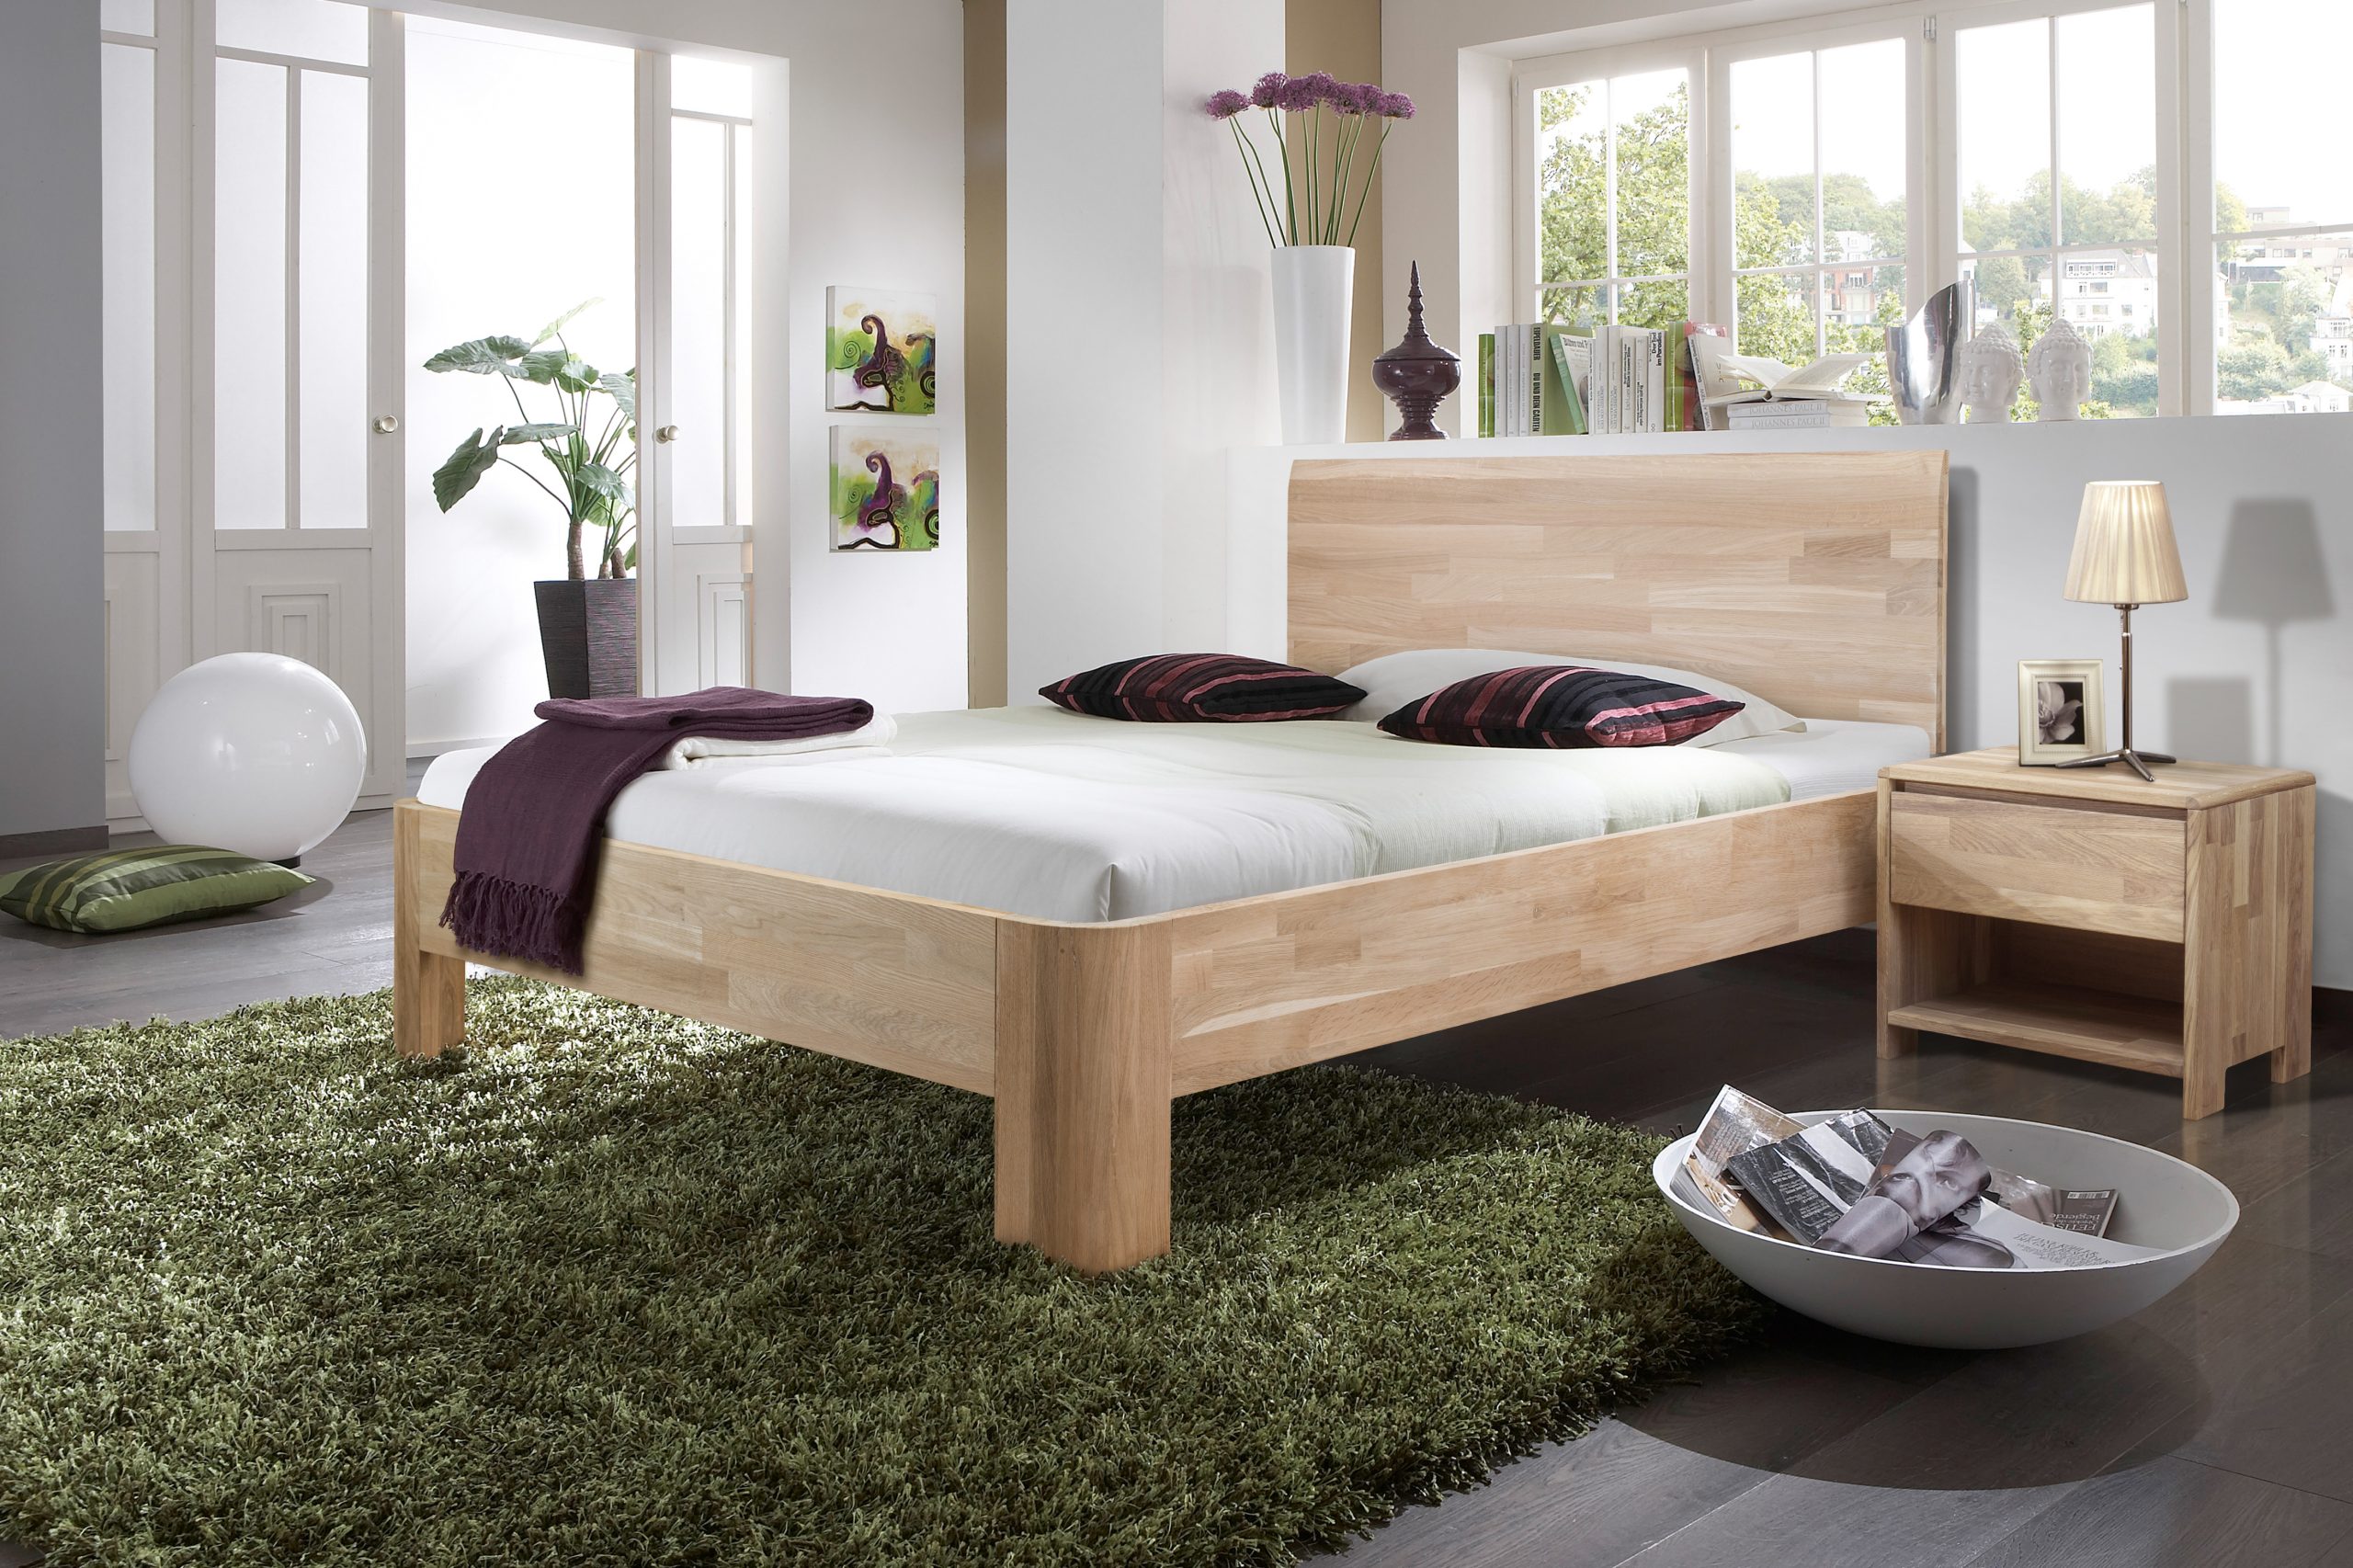 Необычные кровати из дерева | Смотреть 40 идеи на фото бесплатно